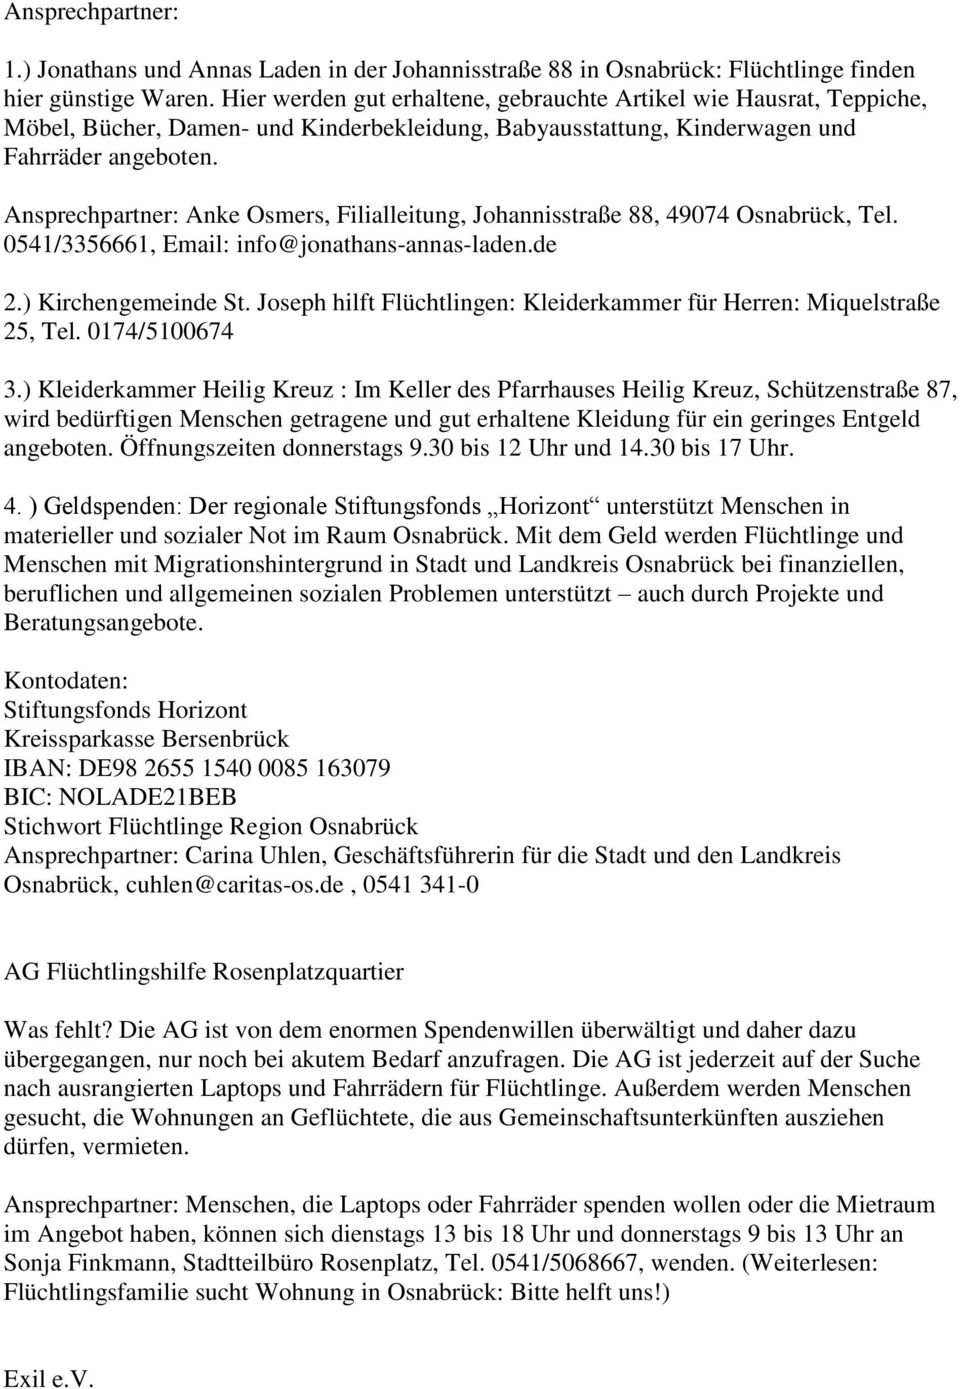 Ansprechpartner: Anke Osmers, Filialleitung, Johannisstraße 88, 49074 Osnabrück, Tel. 0541/3356661, Email: info@jonathans-annas-laden.de 2.) Kirchengemeinde St.